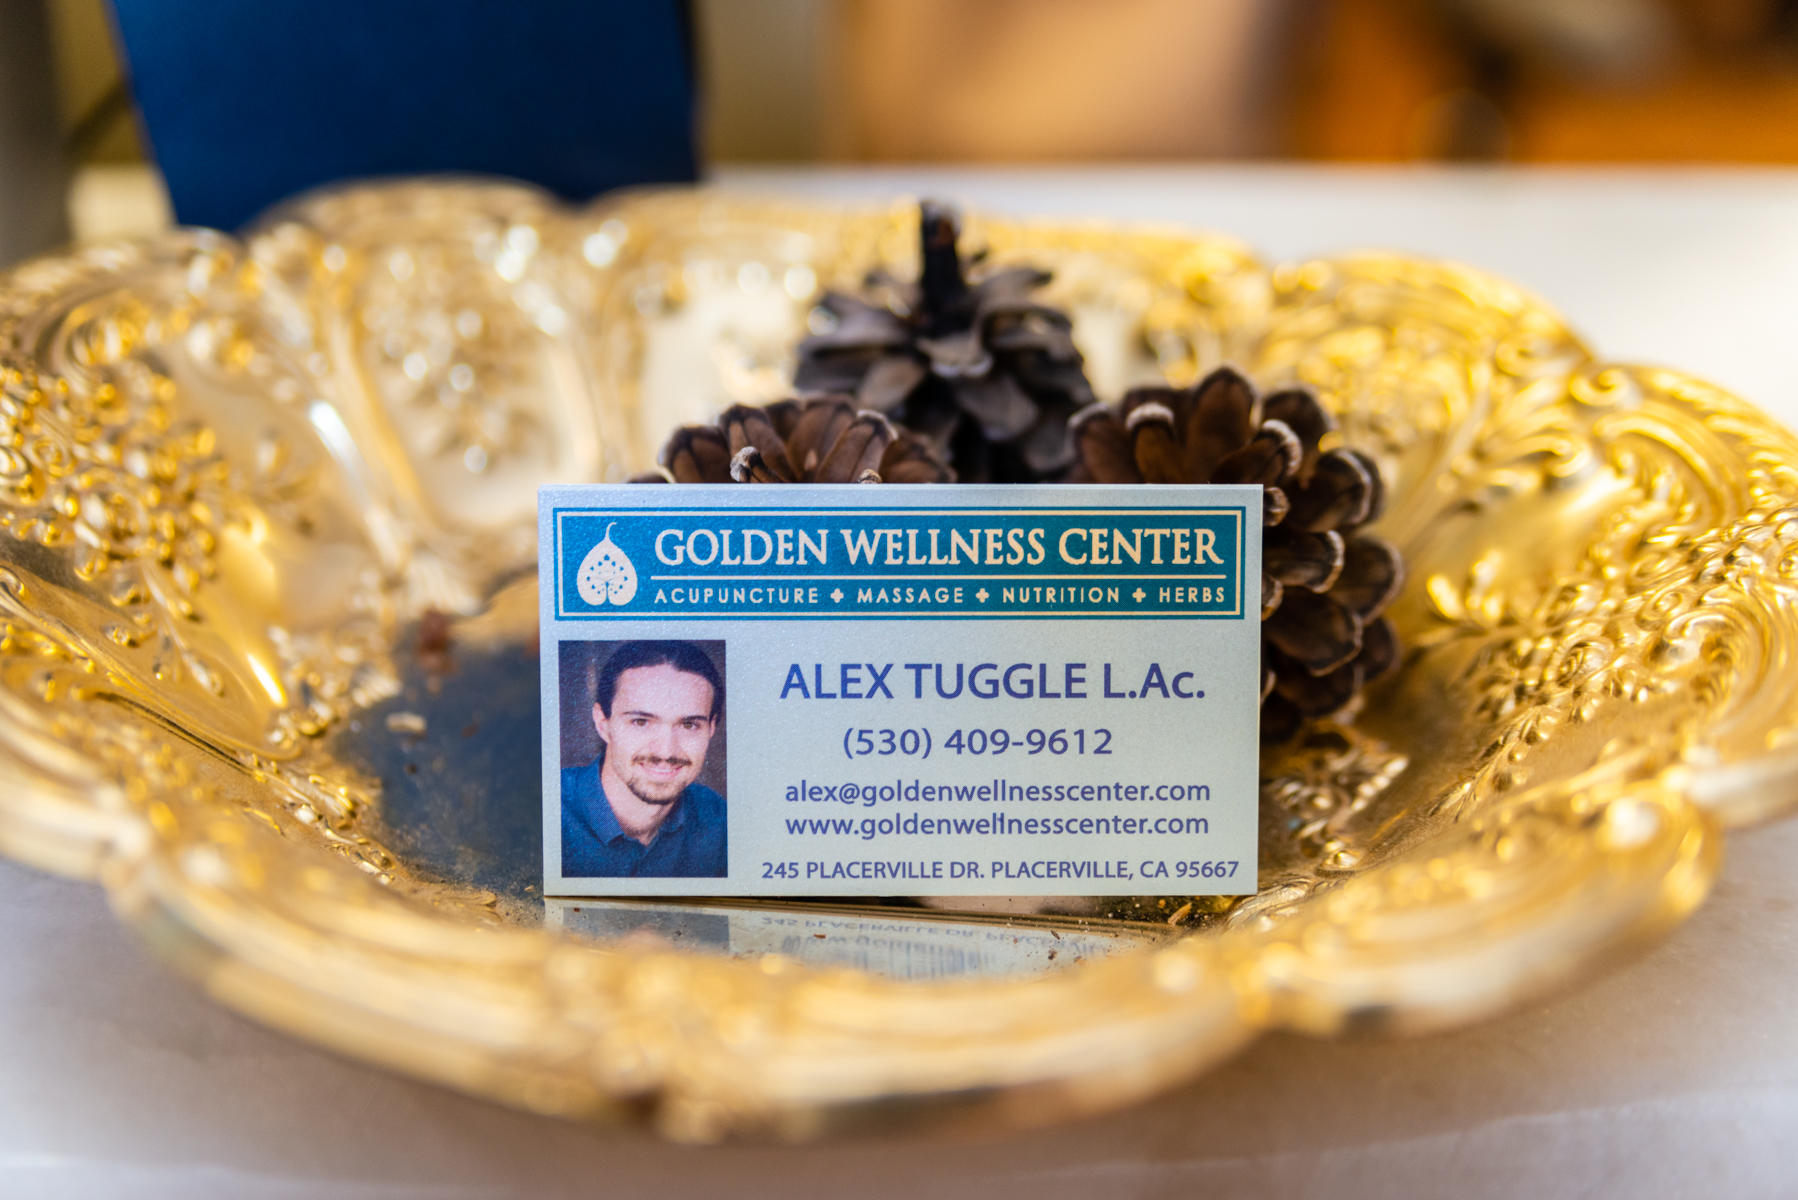 Golden Wellness Center